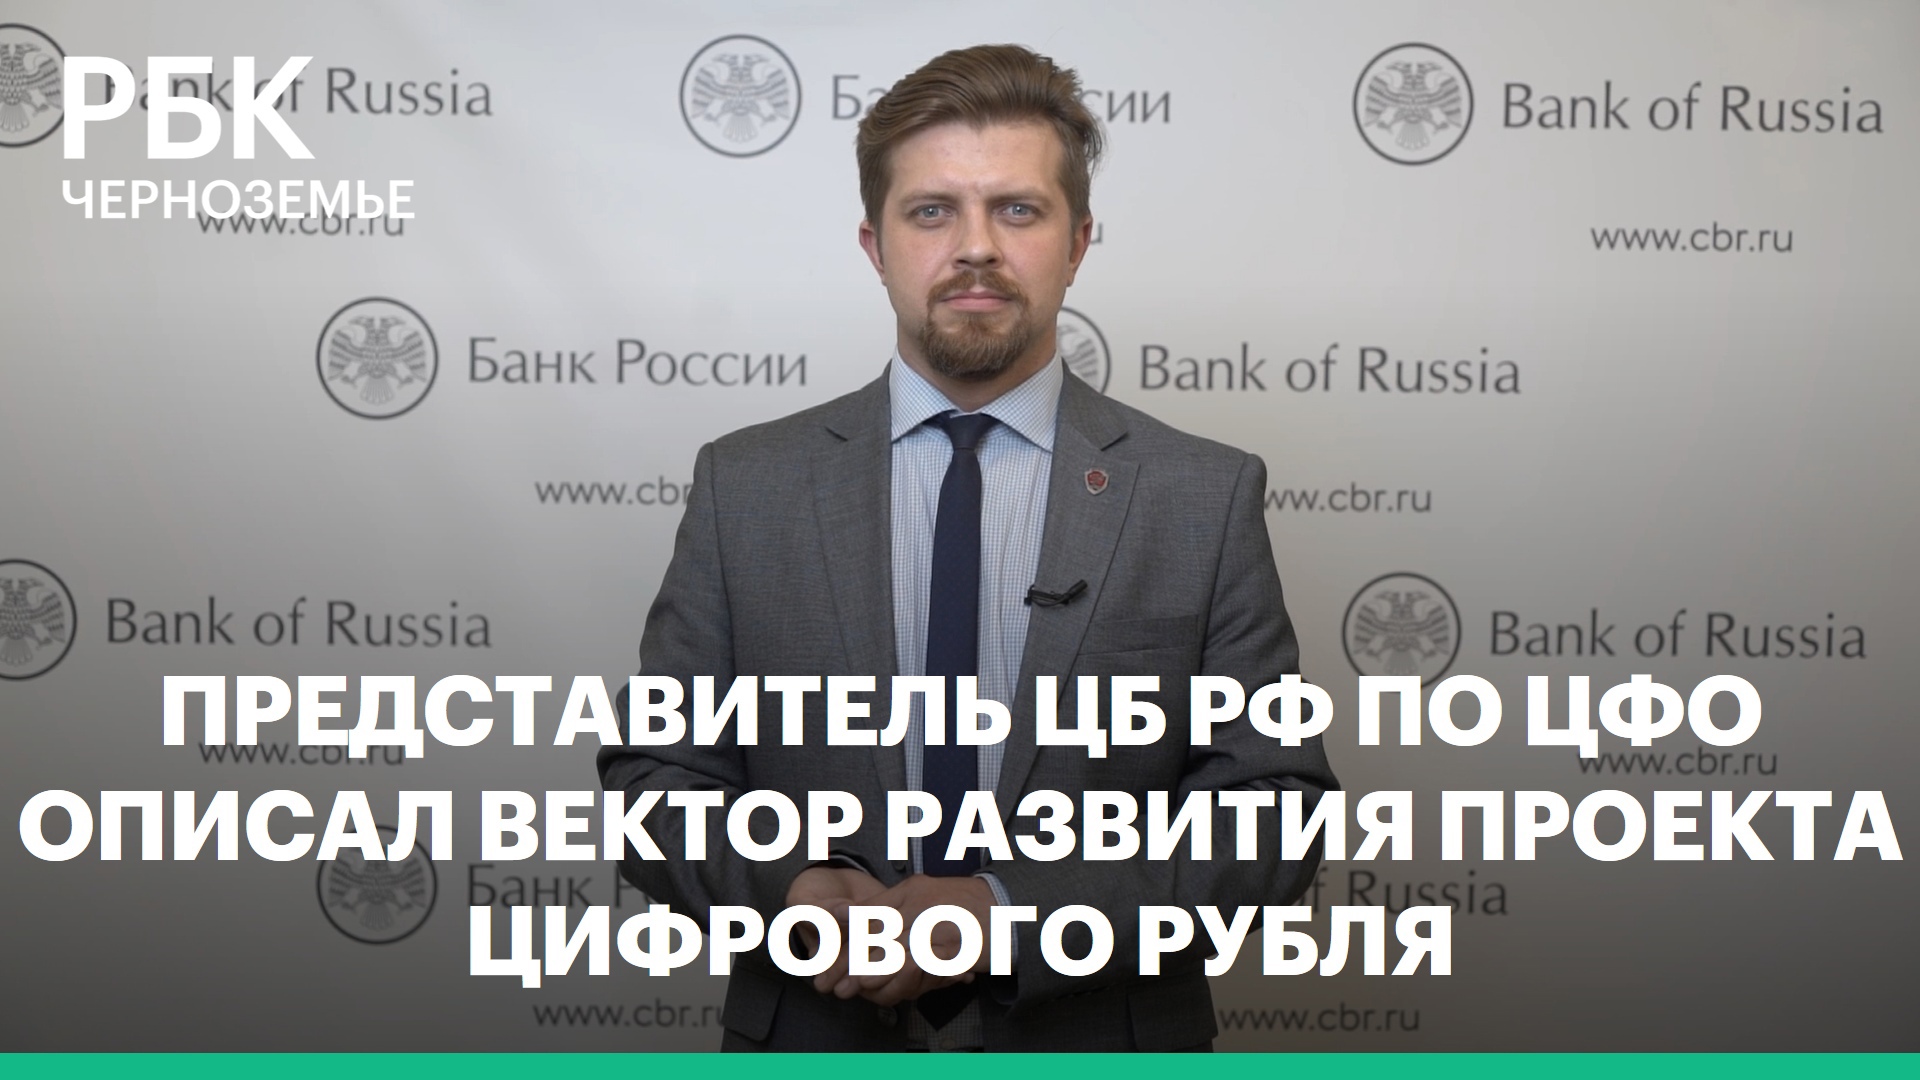 Представитель ЦБ РФ по ЦФО описал вектор развития проекта цифрового рубля